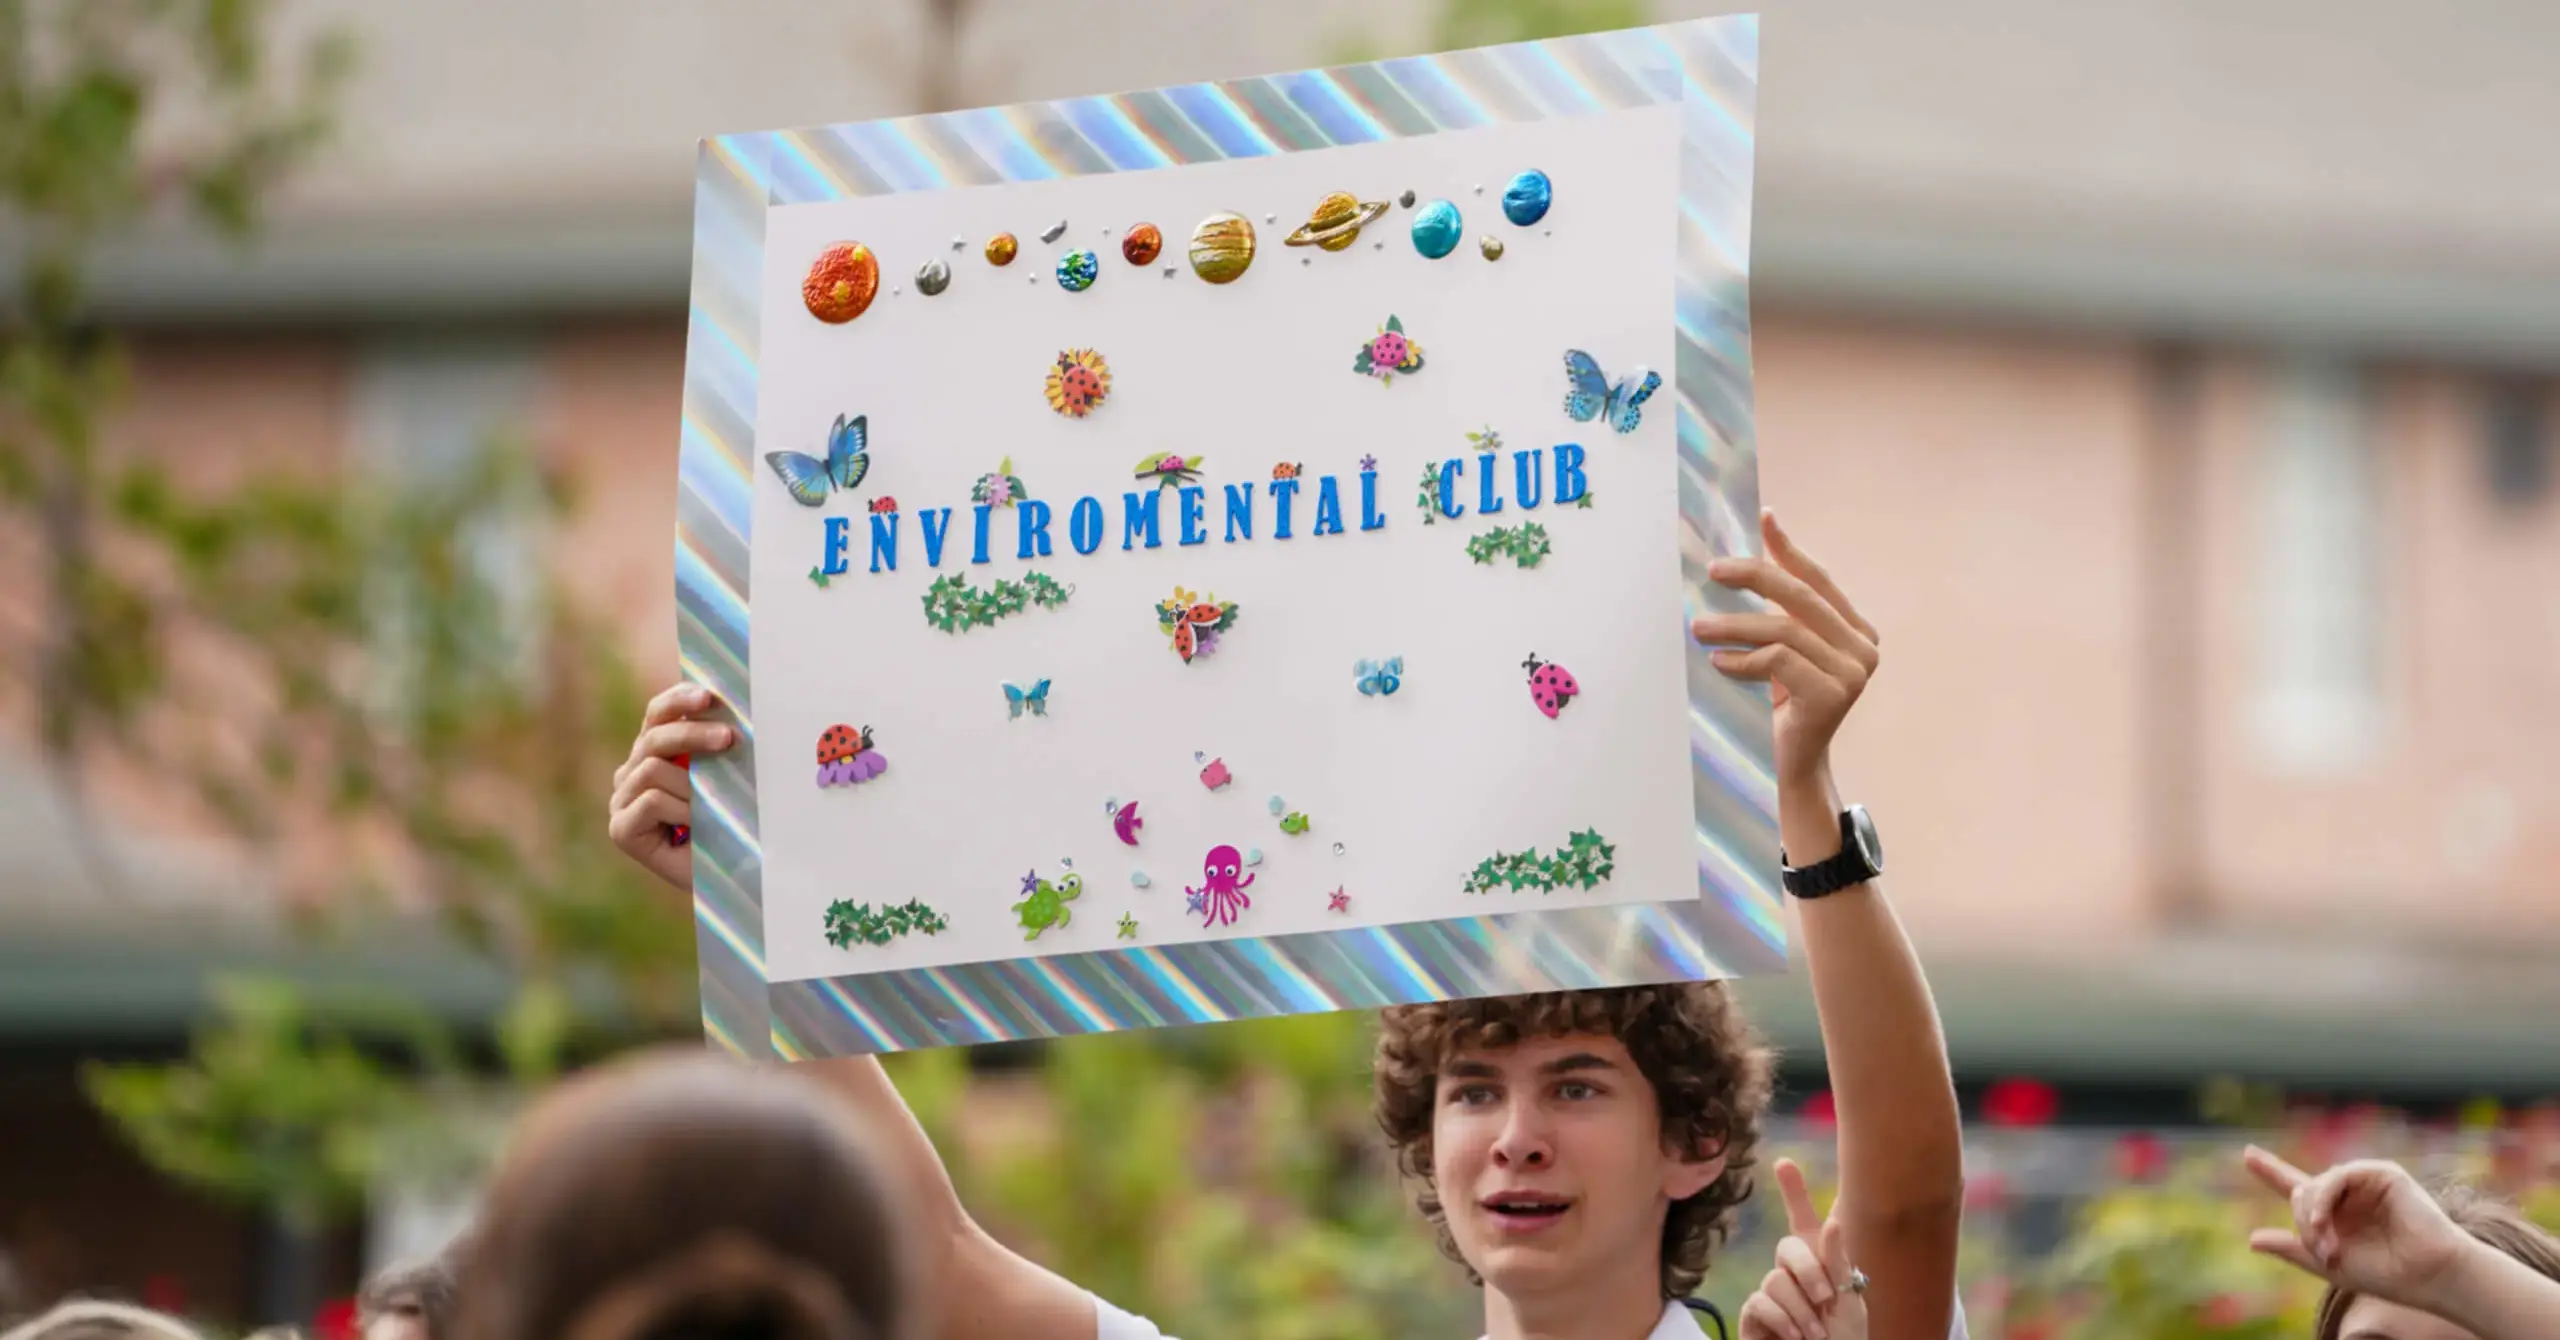 Porter-Gaud Environmental Club